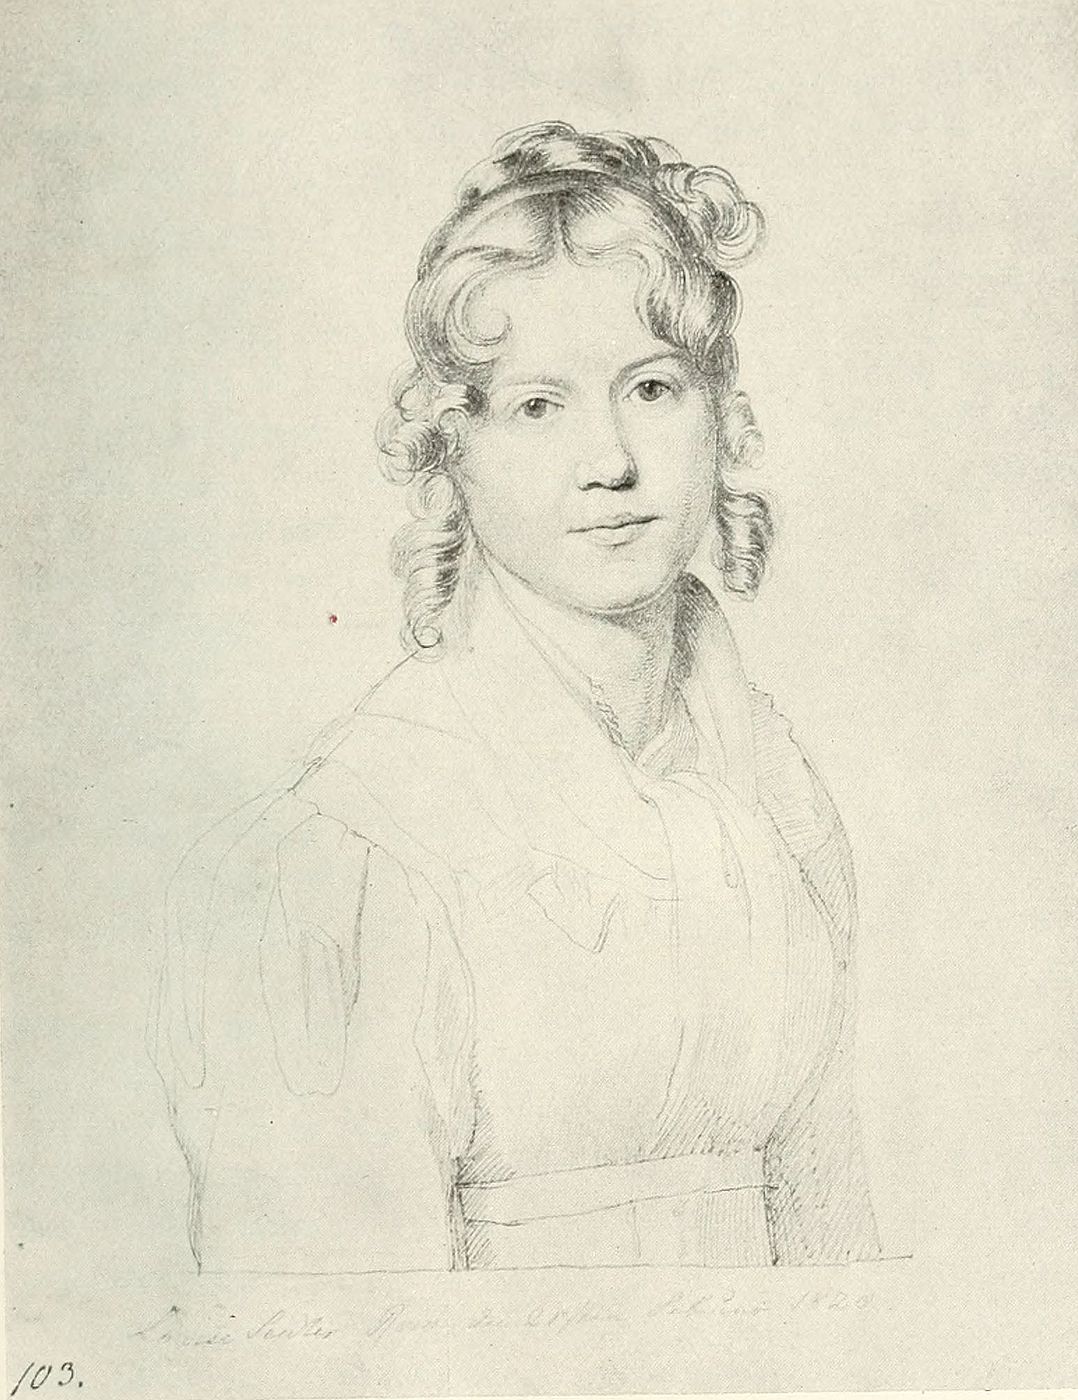 Carl Christian Vogel von Vogelstein (1788-1868): Louise Seidler in Rom, 1820, pen on paper, Staatliche Kunstsammlungen Dresden, Kupferstich-Kabinett